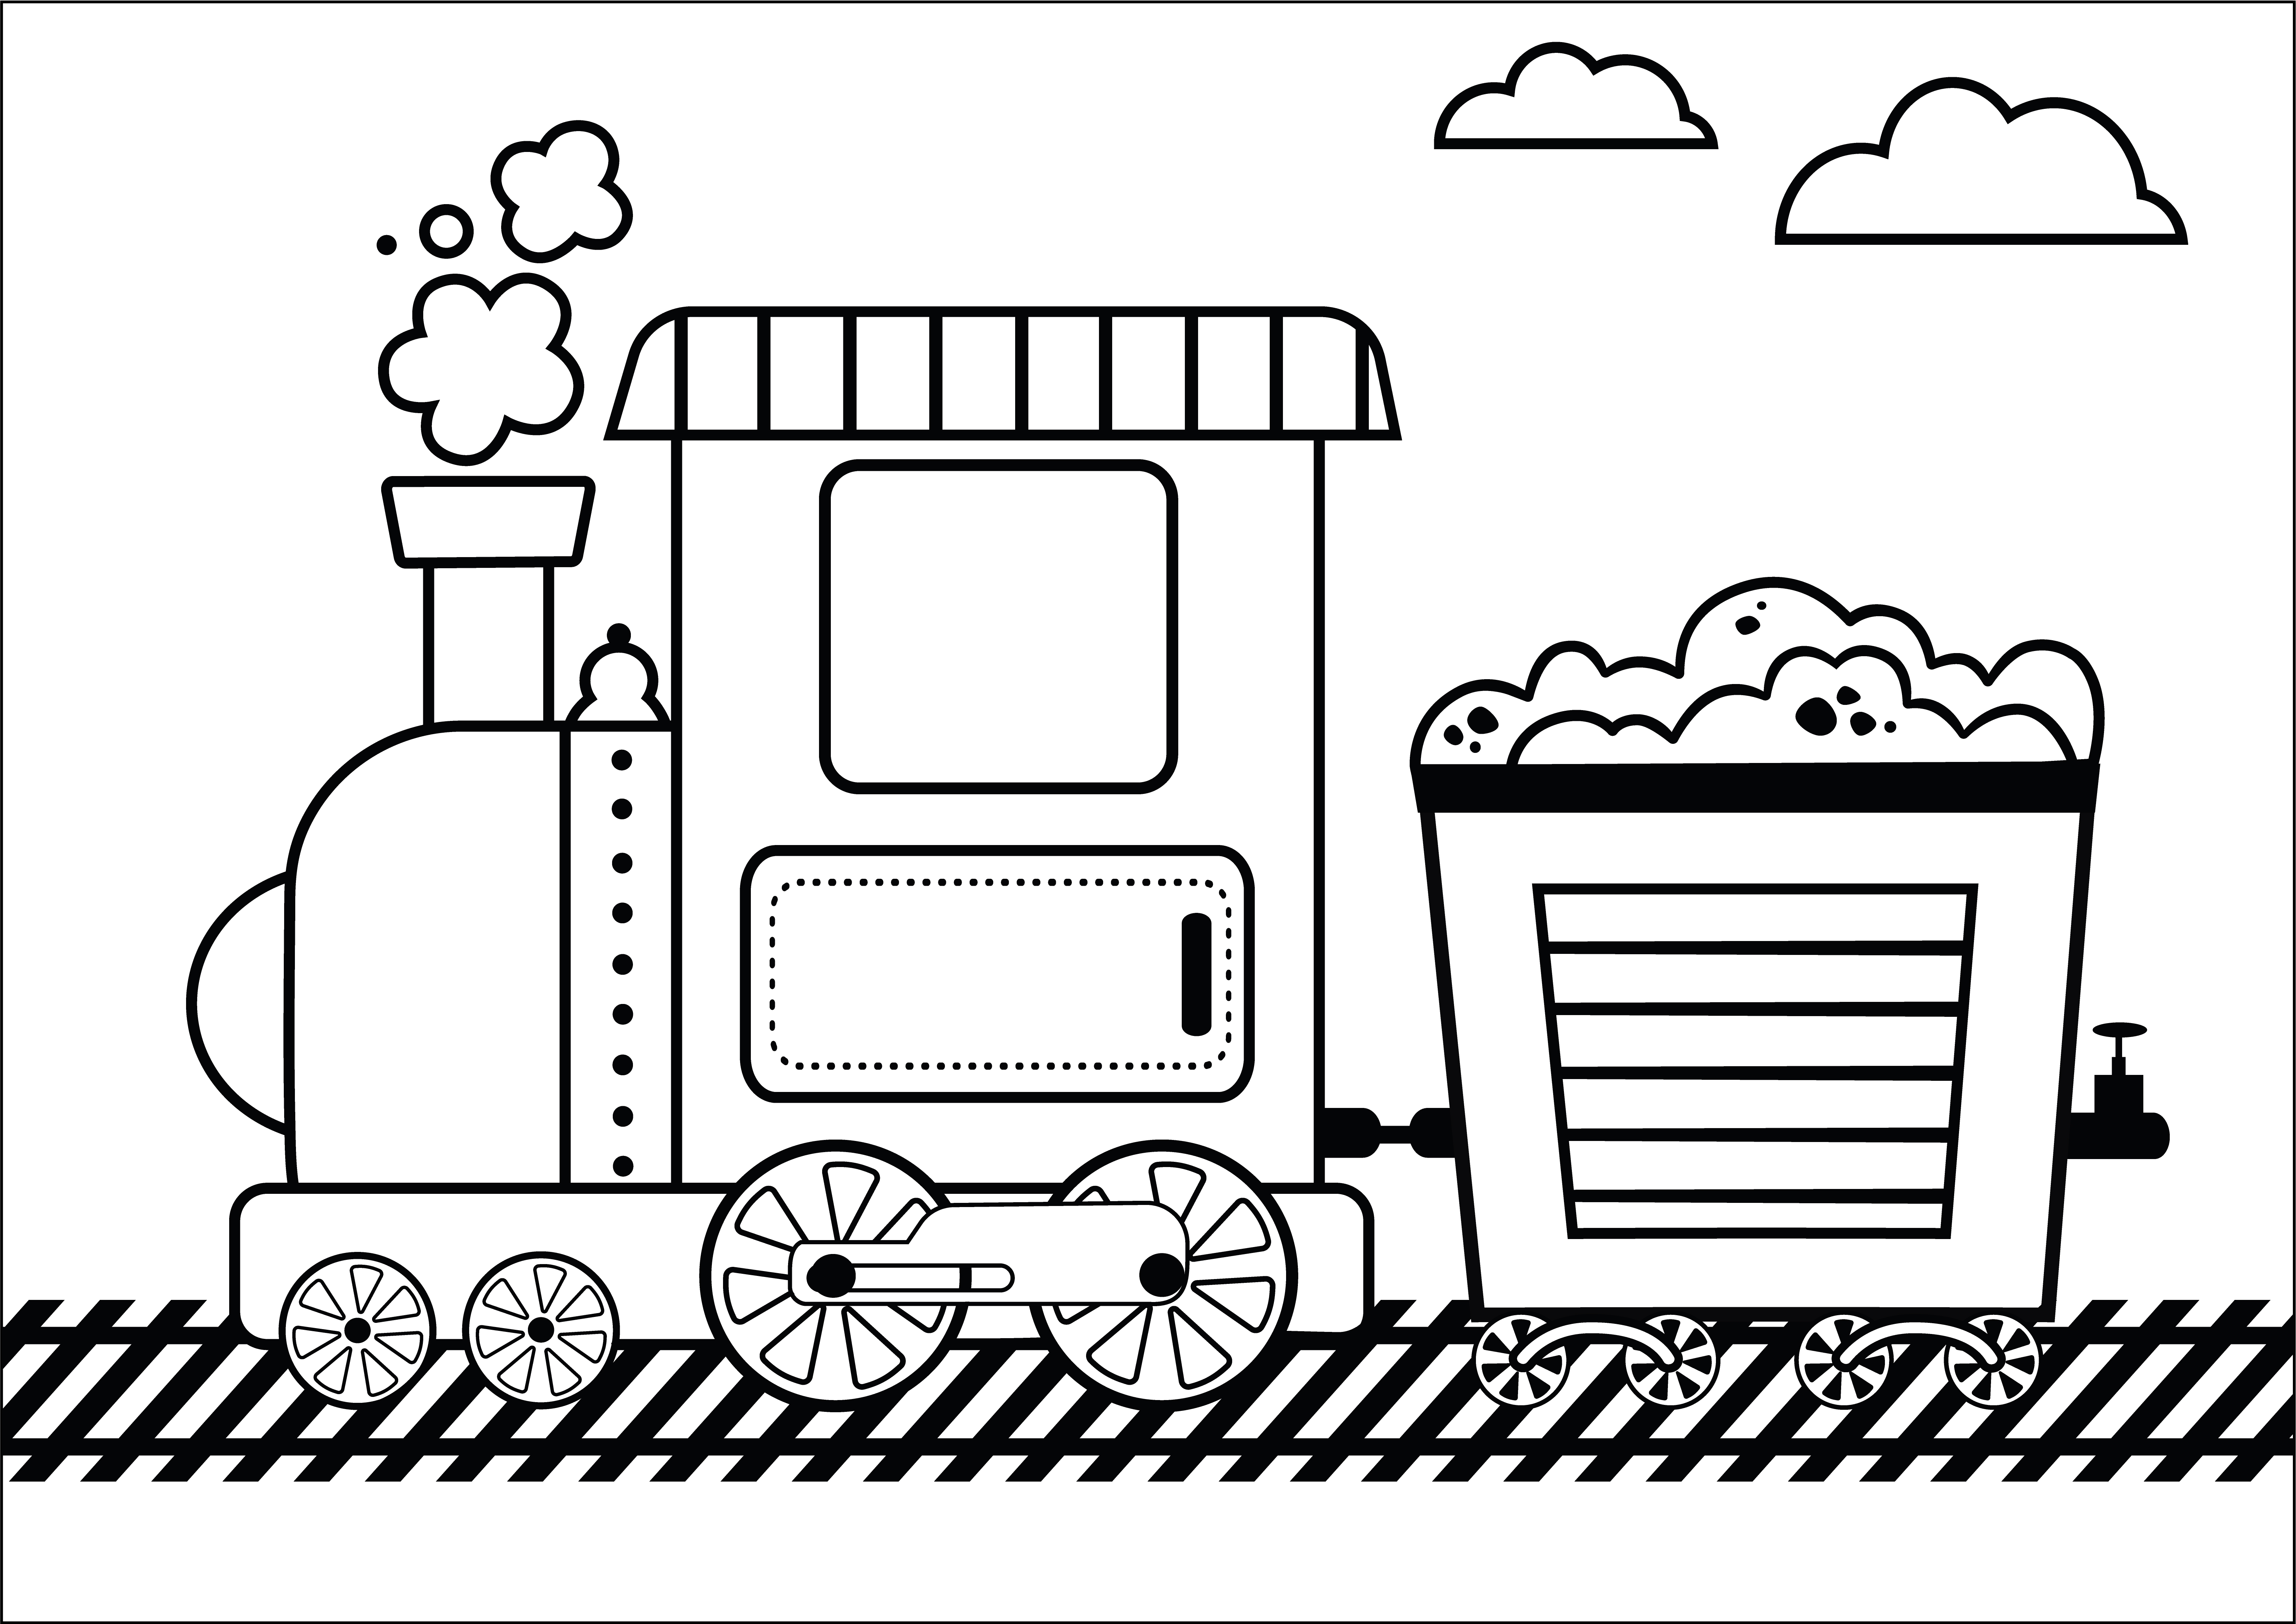 Раскраска поезд тепловоз с тележкой угля формата А4 в высоком качестве